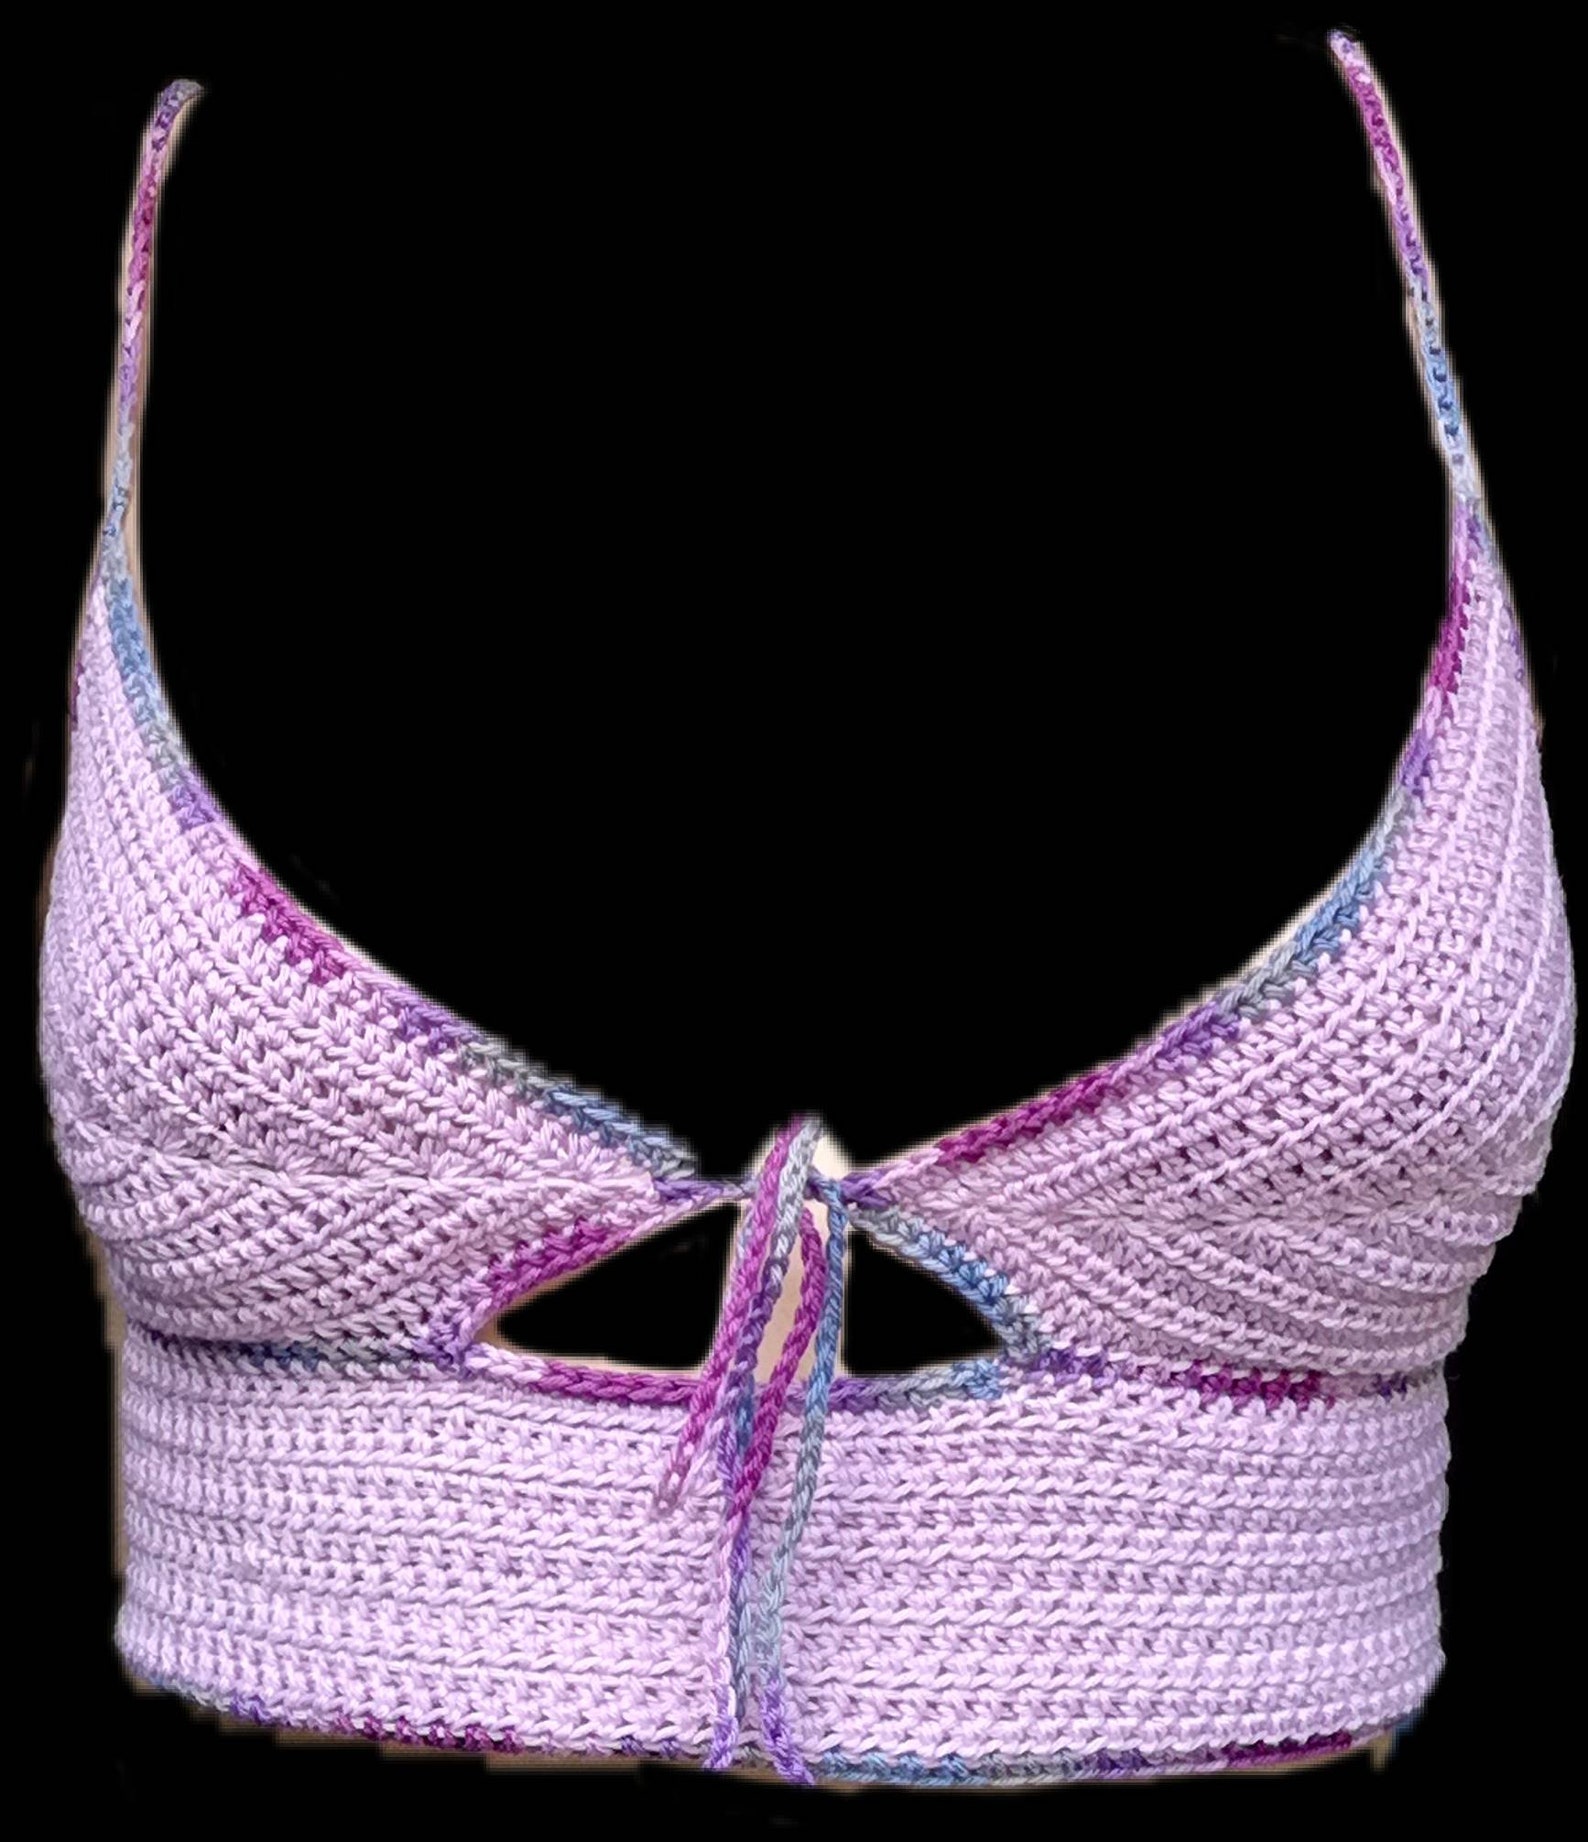 Custom handmade lilac crochet top peakaboob/underboob | Etsy